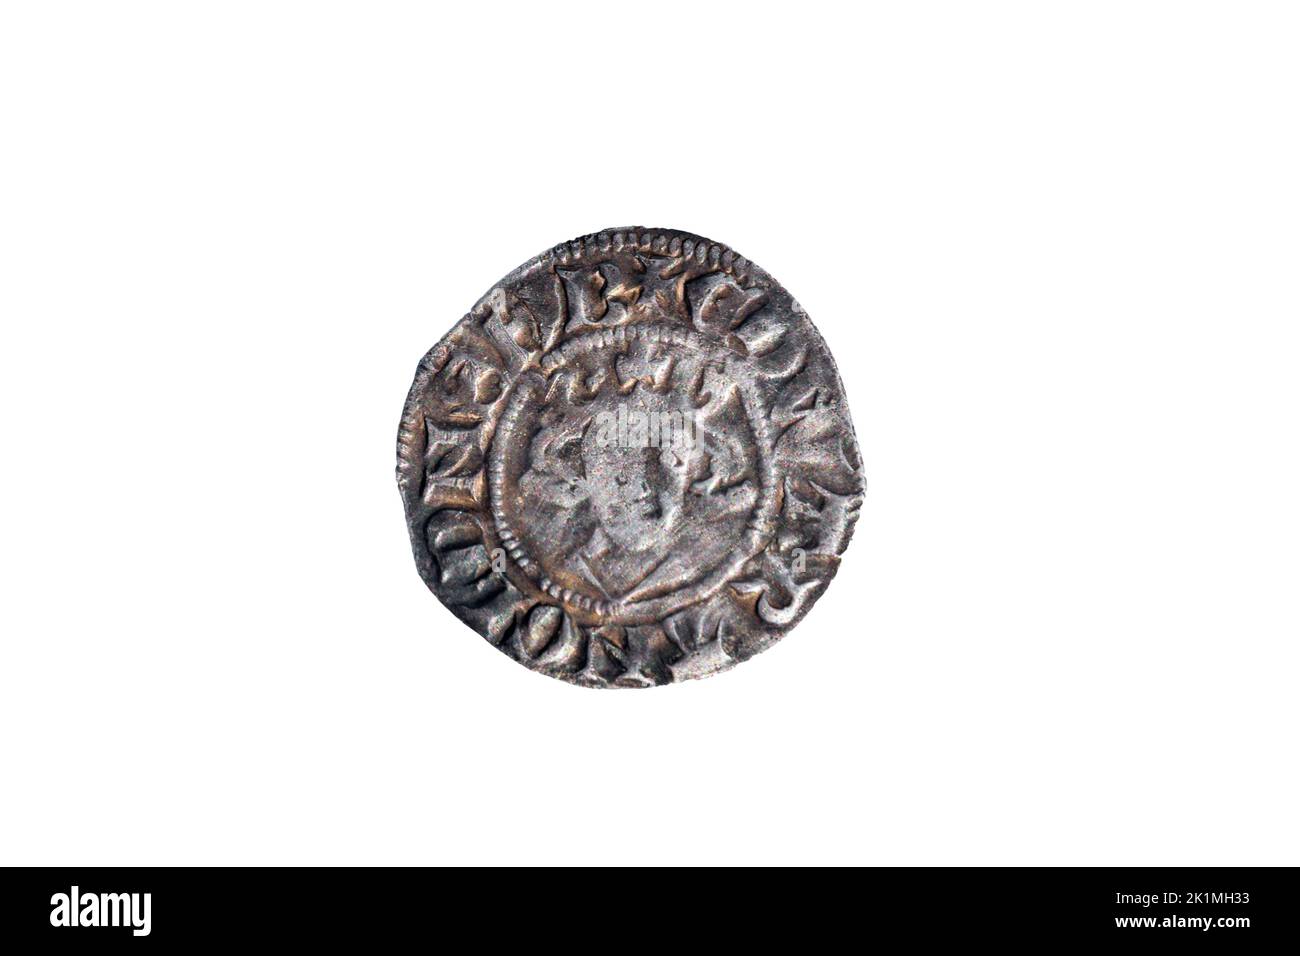 Argent long croix Penny English pièce de monnaie martelée du roi Henry II du 14th siècle datant d'environ 1310-1314 minted dans Canterbury Angleterre, coupé et moi Banque D'Images